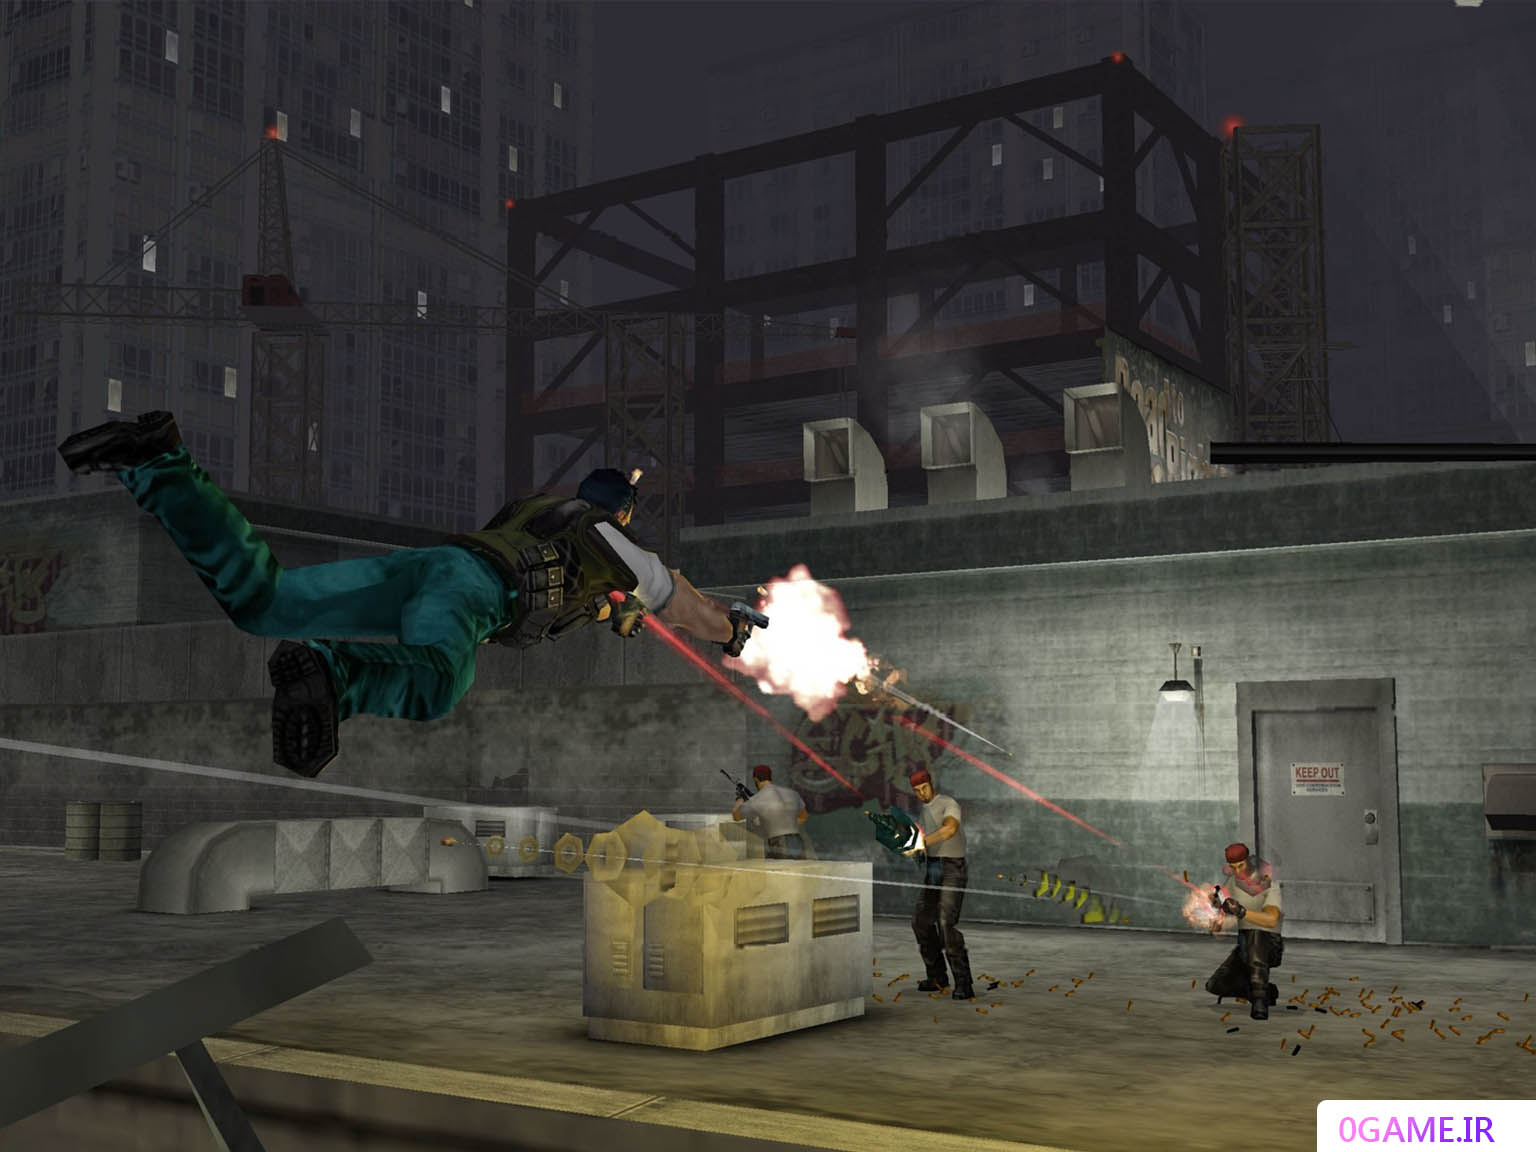 دانلود بازی مستقیم به سمت مرگ 2 (Dead to Rights) نسخه کامل برای کامپیوتر